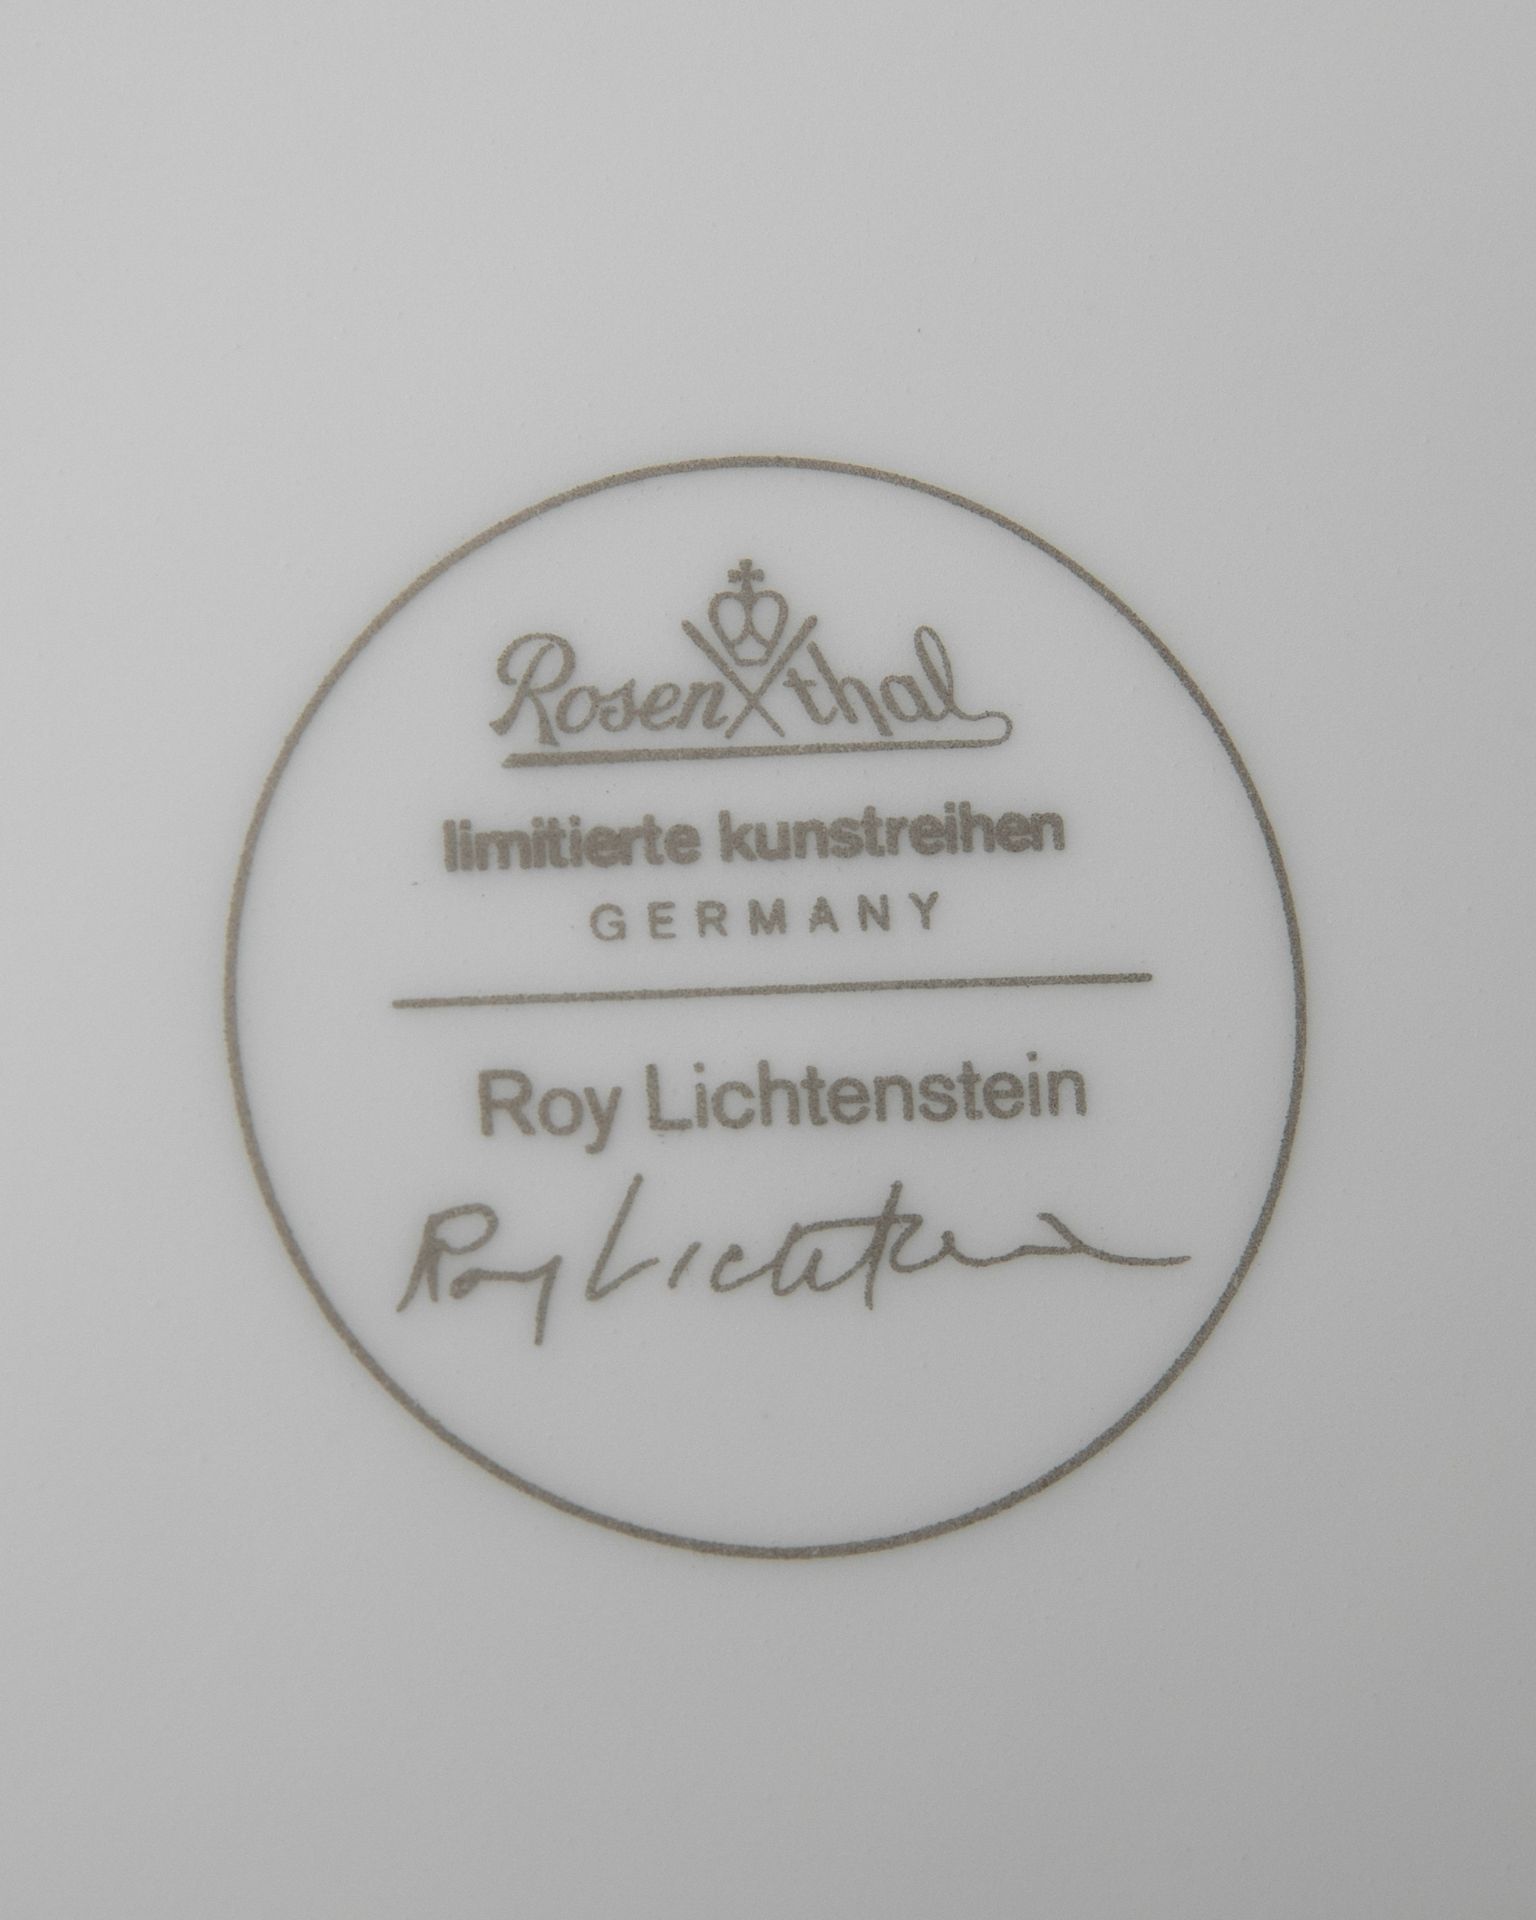 Roy Lichtenstein*, Rosenthal, Teaset, limited edition Ex. 56/100 - Image 6 of 6